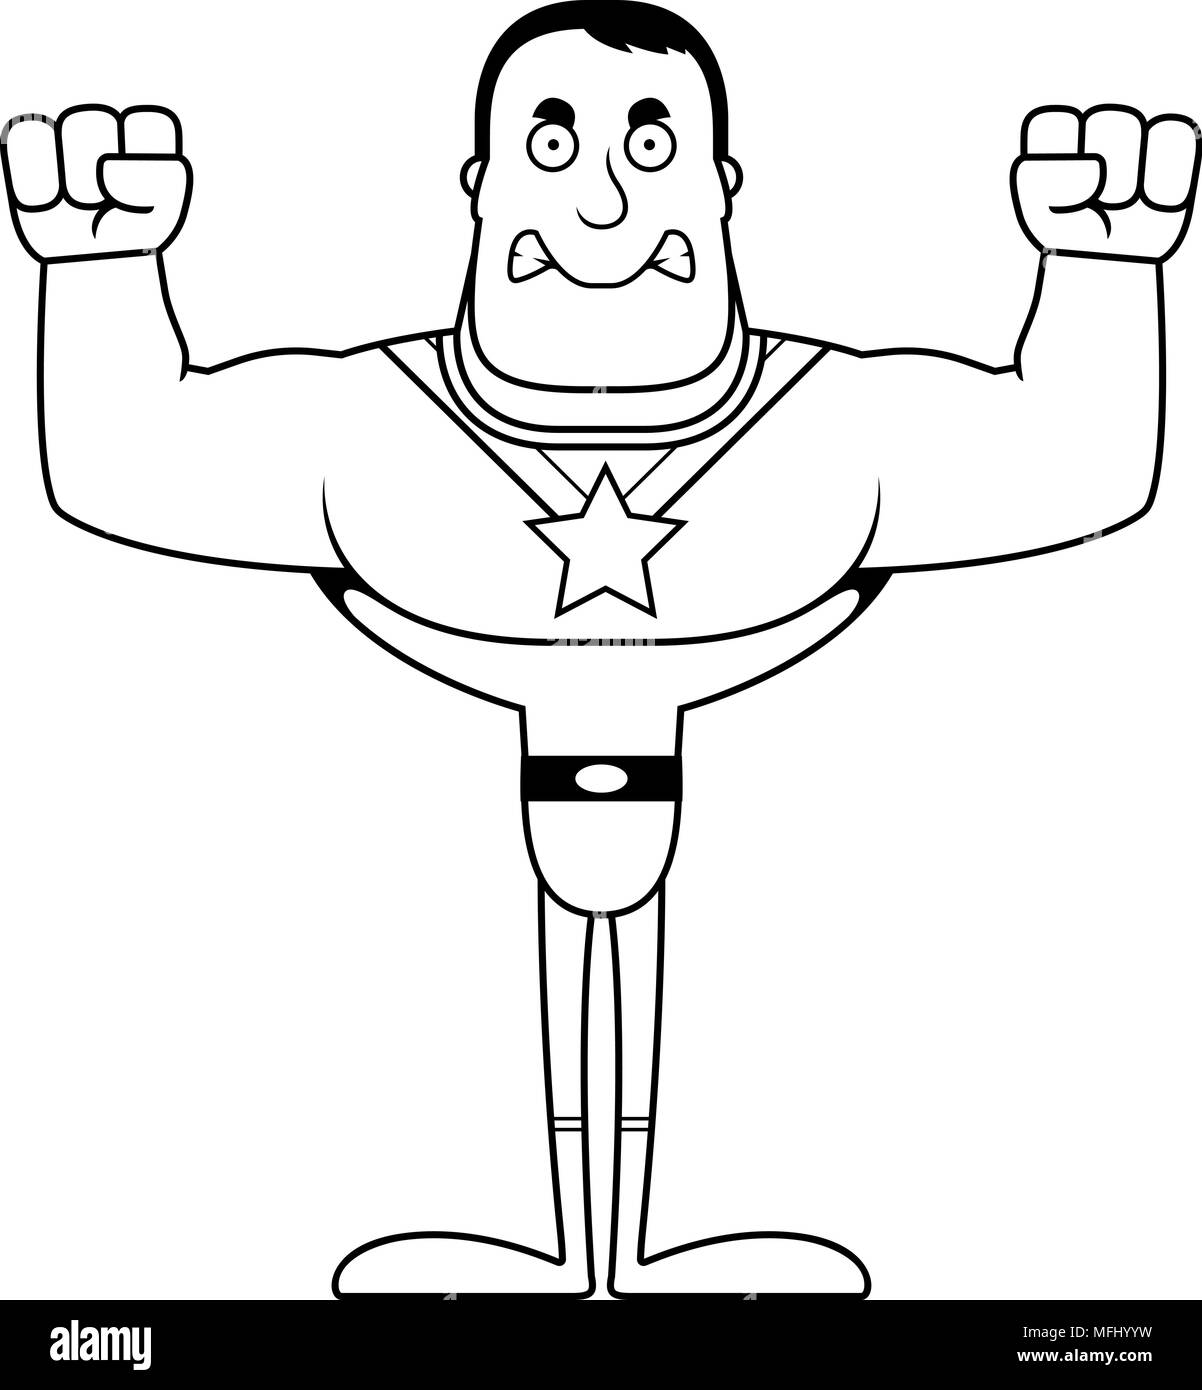 Un cartoon superhero cercando arrabbiato. Illustrazione Vettoriale